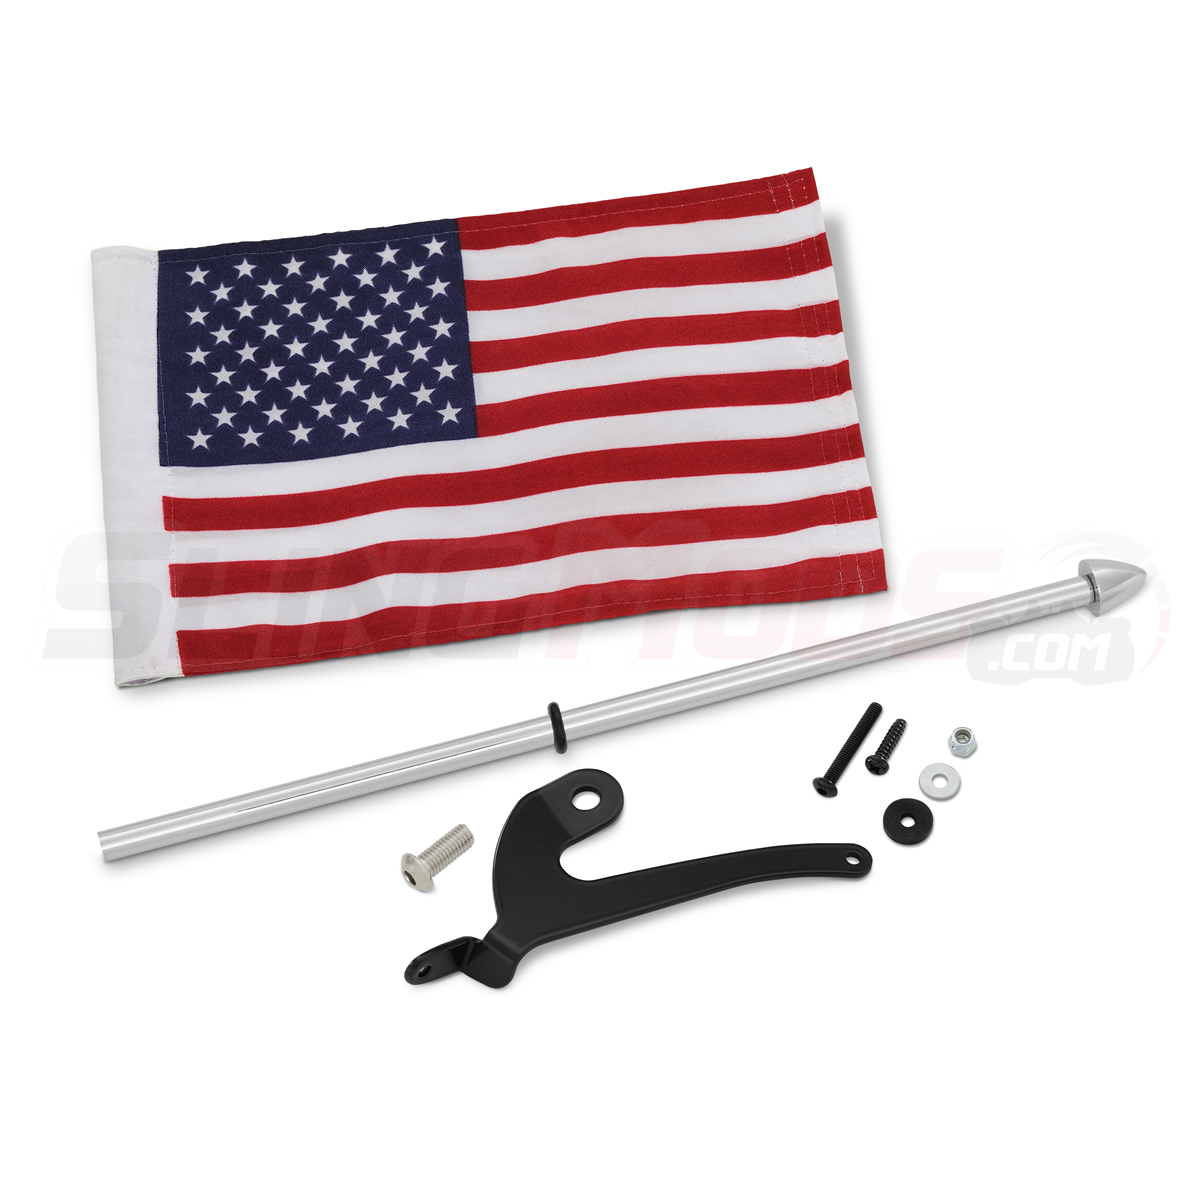 http://www.slingmods.com/image/catalog/show-chrome/spyder-flag-pole-non-foldable-chrome/canam-spyder-f3l-rtl-chrome-non-foldable-flag-pole-kit-with-american-flag-main-2.jpg